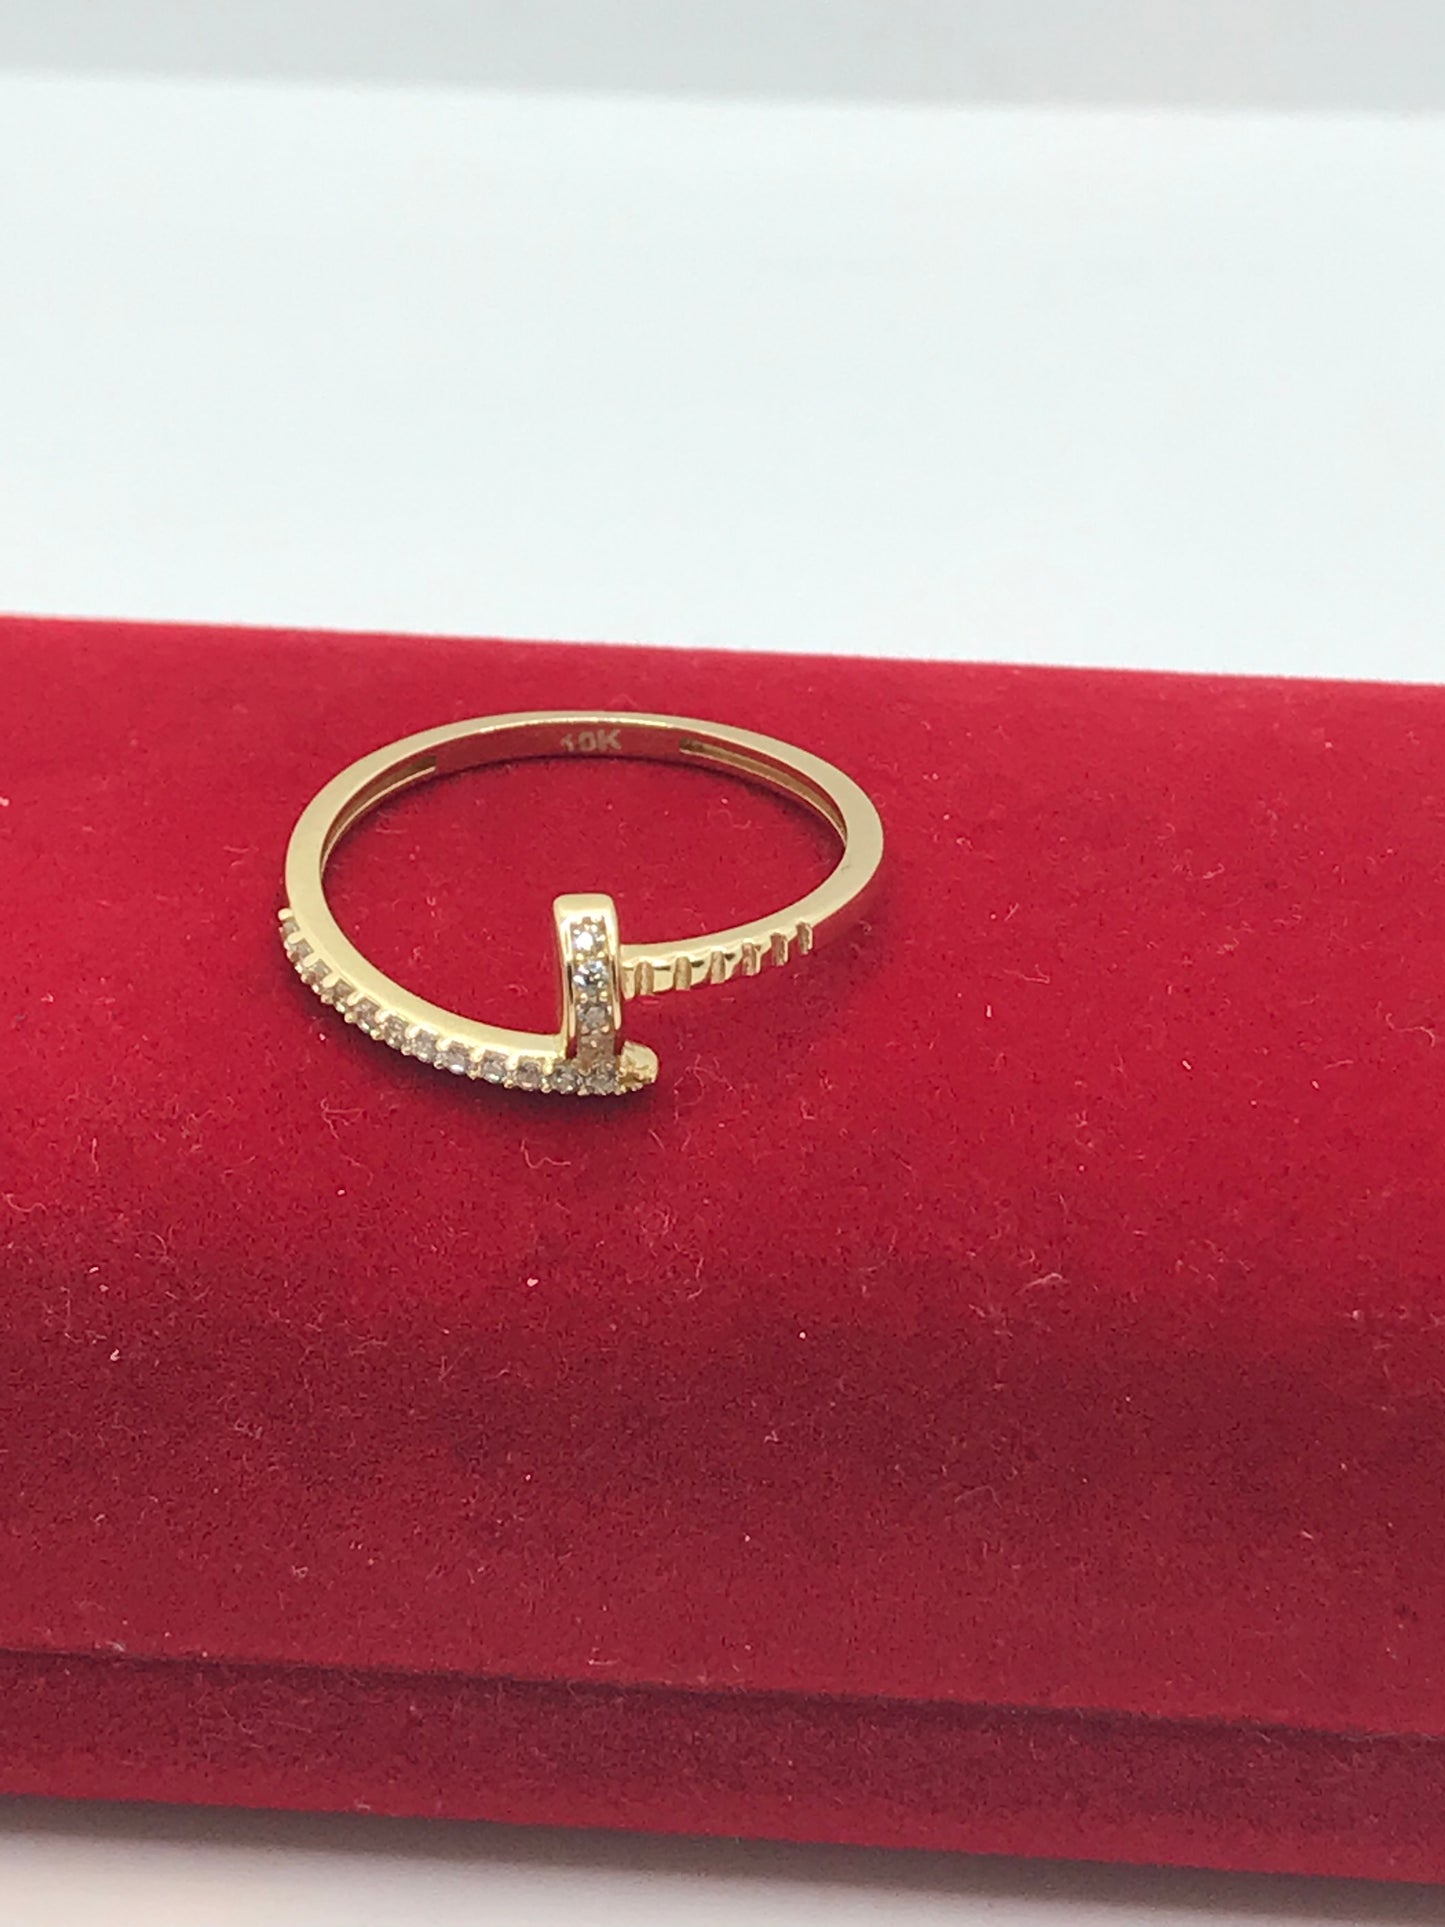 10k gold nail ring